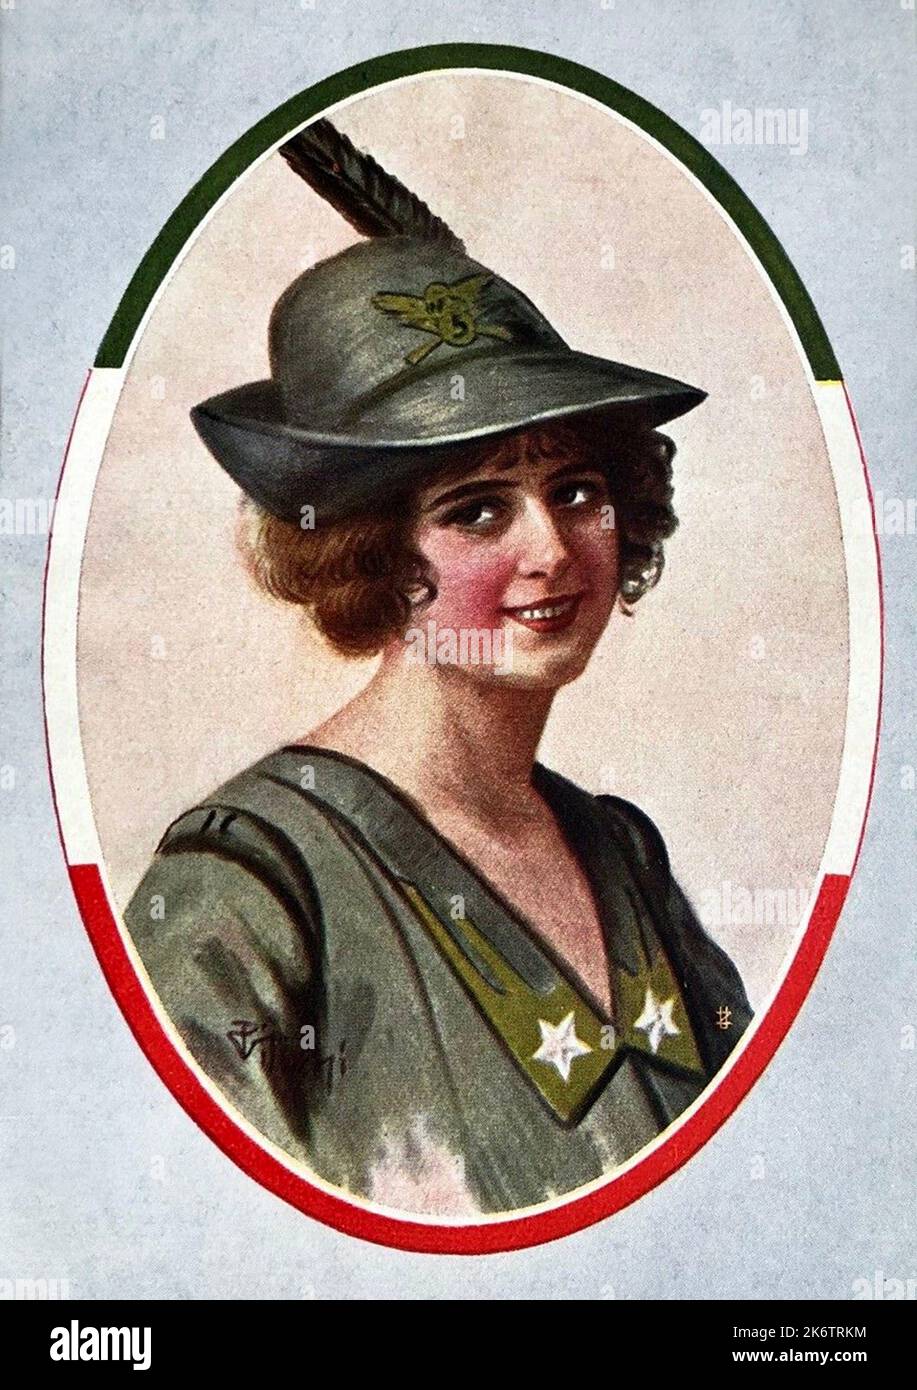 1918 ca., ITALIA : cartolina popolare italiana con una donna vestita con l'uniforme militare ALPINO soldato . Illustratore sconosciuto. - ALPINI - ALPINE - CARTOLINA POSTALE - PRIMA GUERRA Mondiale - WWI - GRANDE GUERRA - GRANDE GUERRA - soldato - soldato - divisa uniforme militare - uniforme militare - ITALIA - RITRATTO - RITRATTO - STORIA - FOTO STORICHE - sorriso - sorriso - archivio GBB Foto Stock